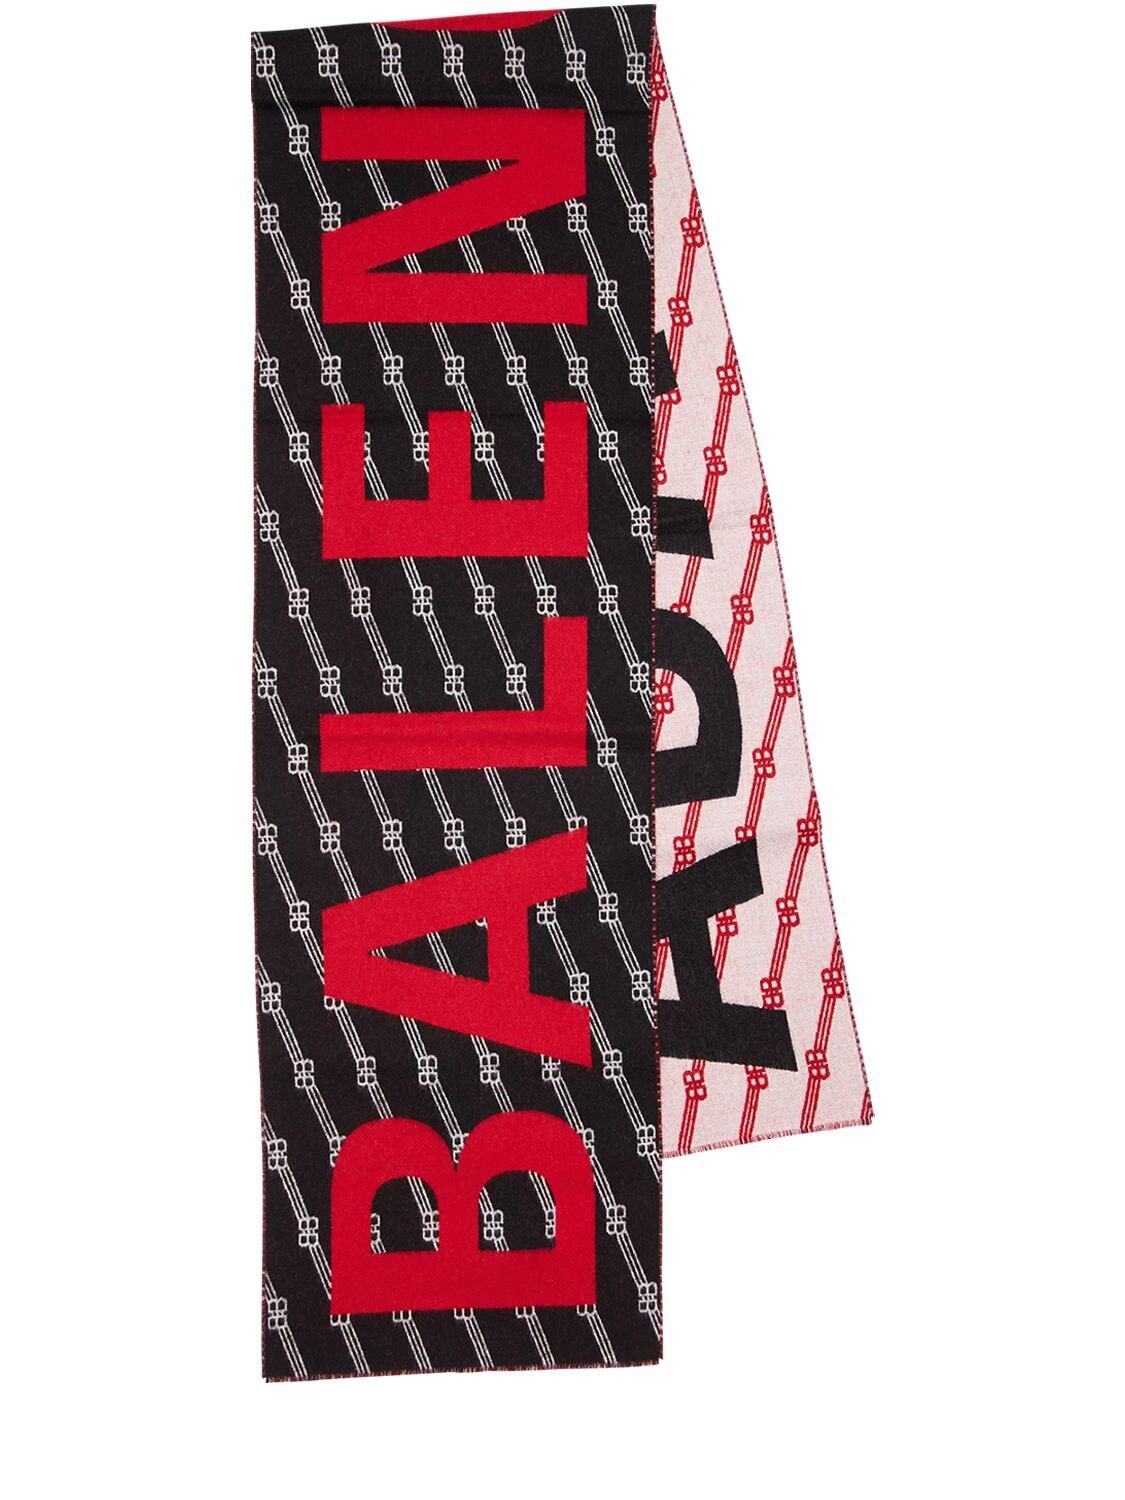 Balenciaga Logo Jacquard Knit Wool Scarf in Black - Lyst